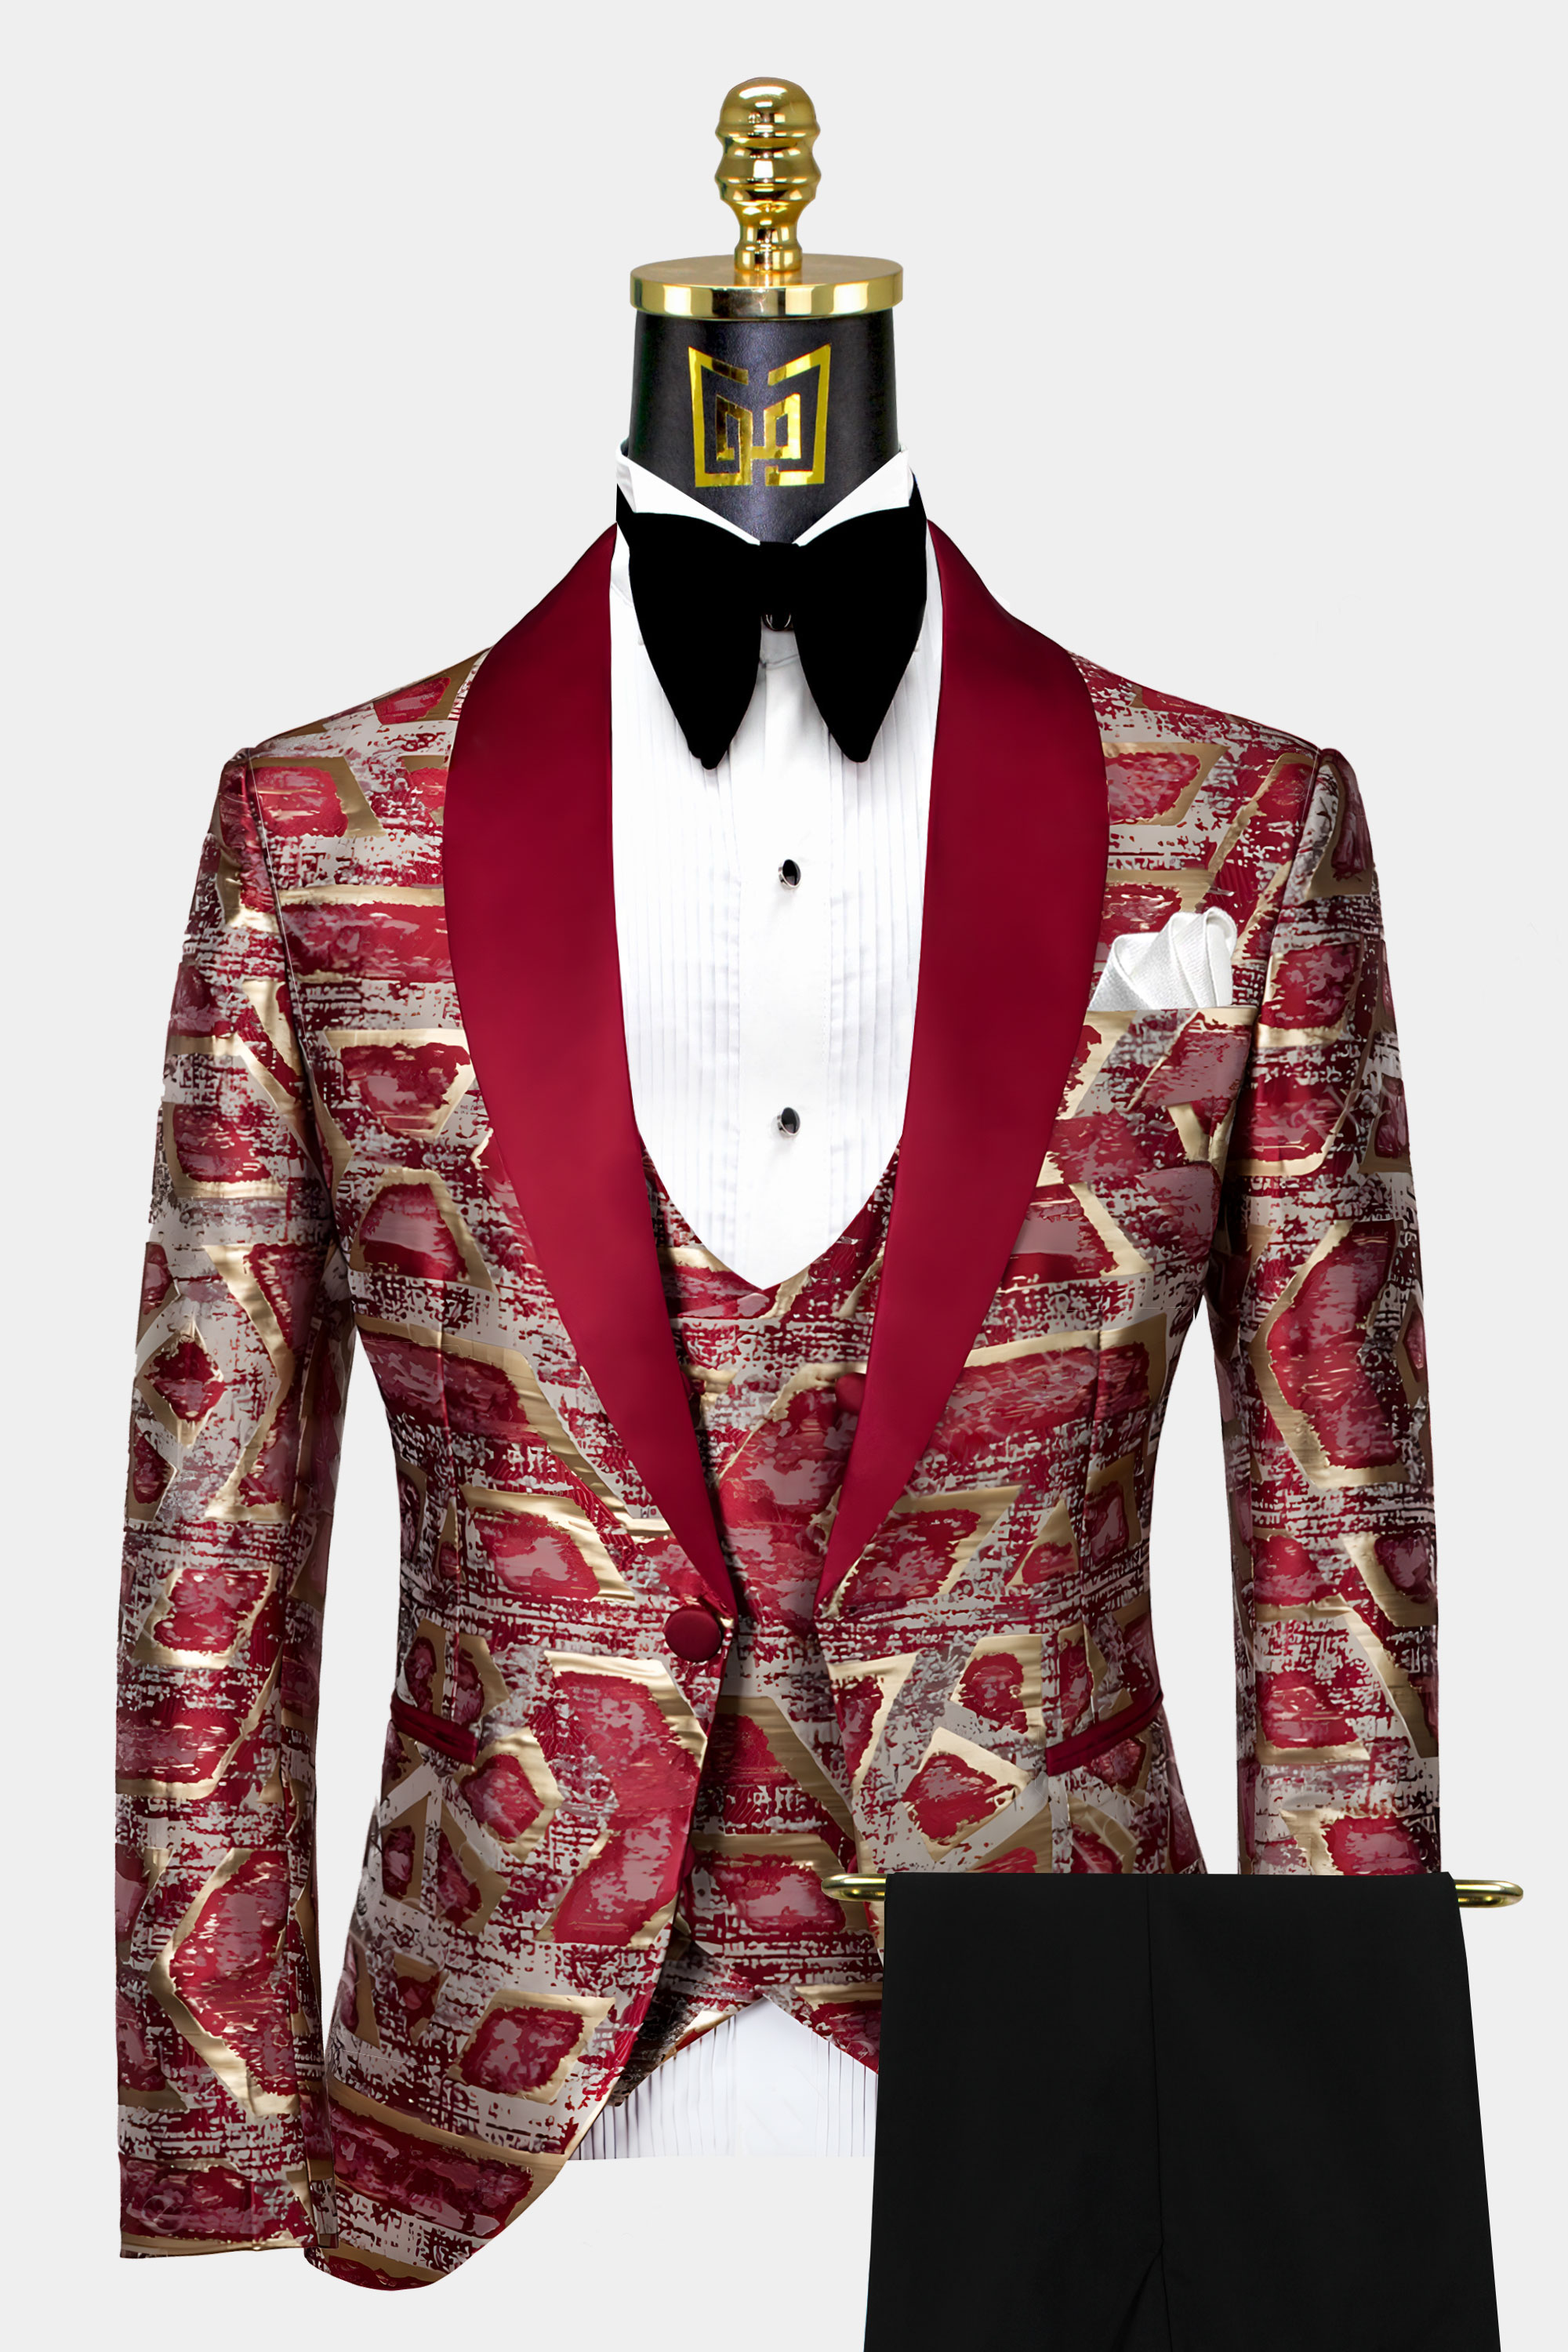 Burgundy and Gold Tuxedo Suit | Gentleman's Guru